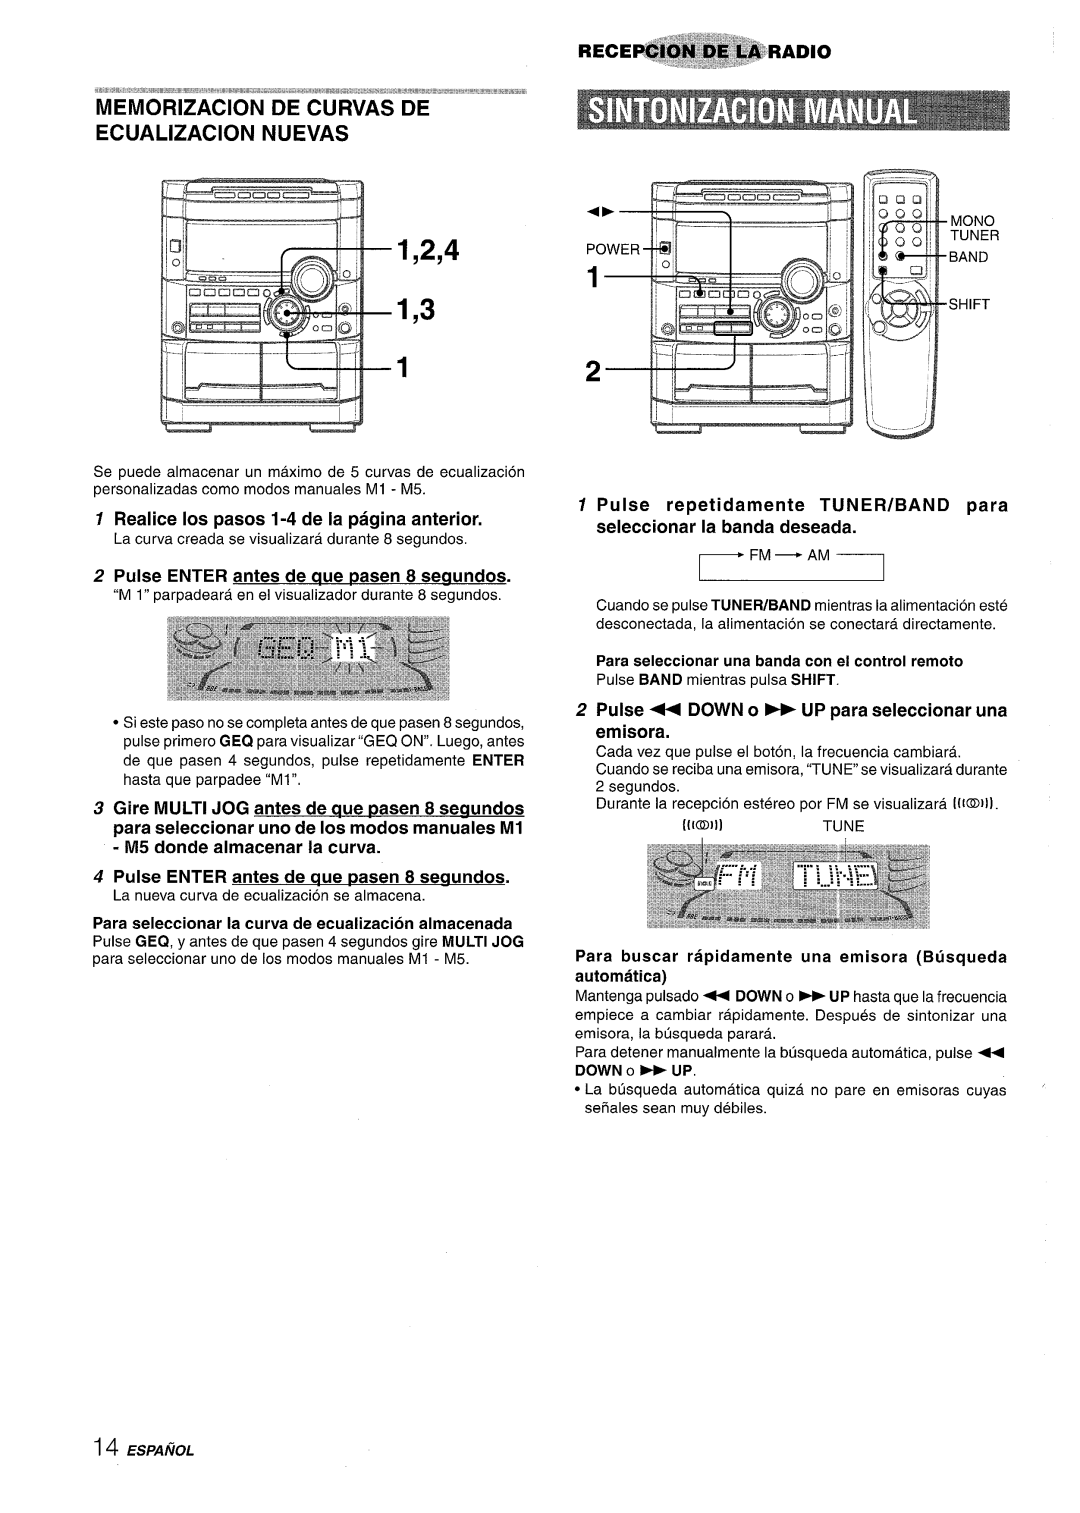 Sony NSX-A767 1,2,4 1,3, Realice Ios pasos 1-4 de la pagina anterior, Pulse ENTER antes de aue pasen 8 seaundos, Fm - Am 